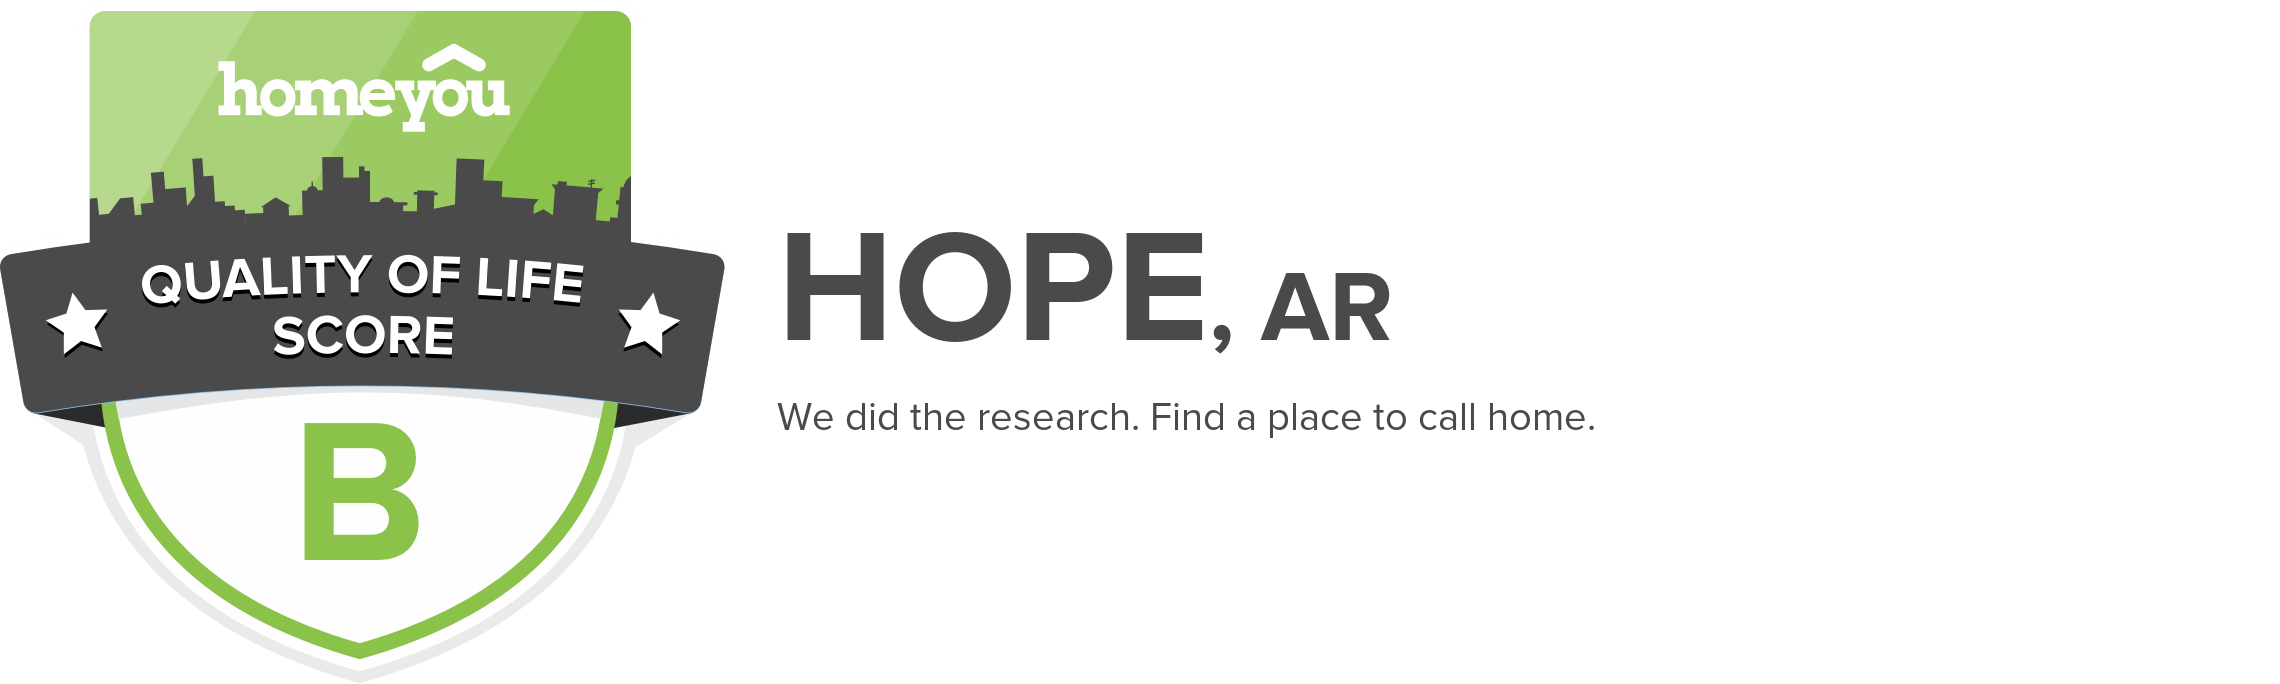 Hope, AR